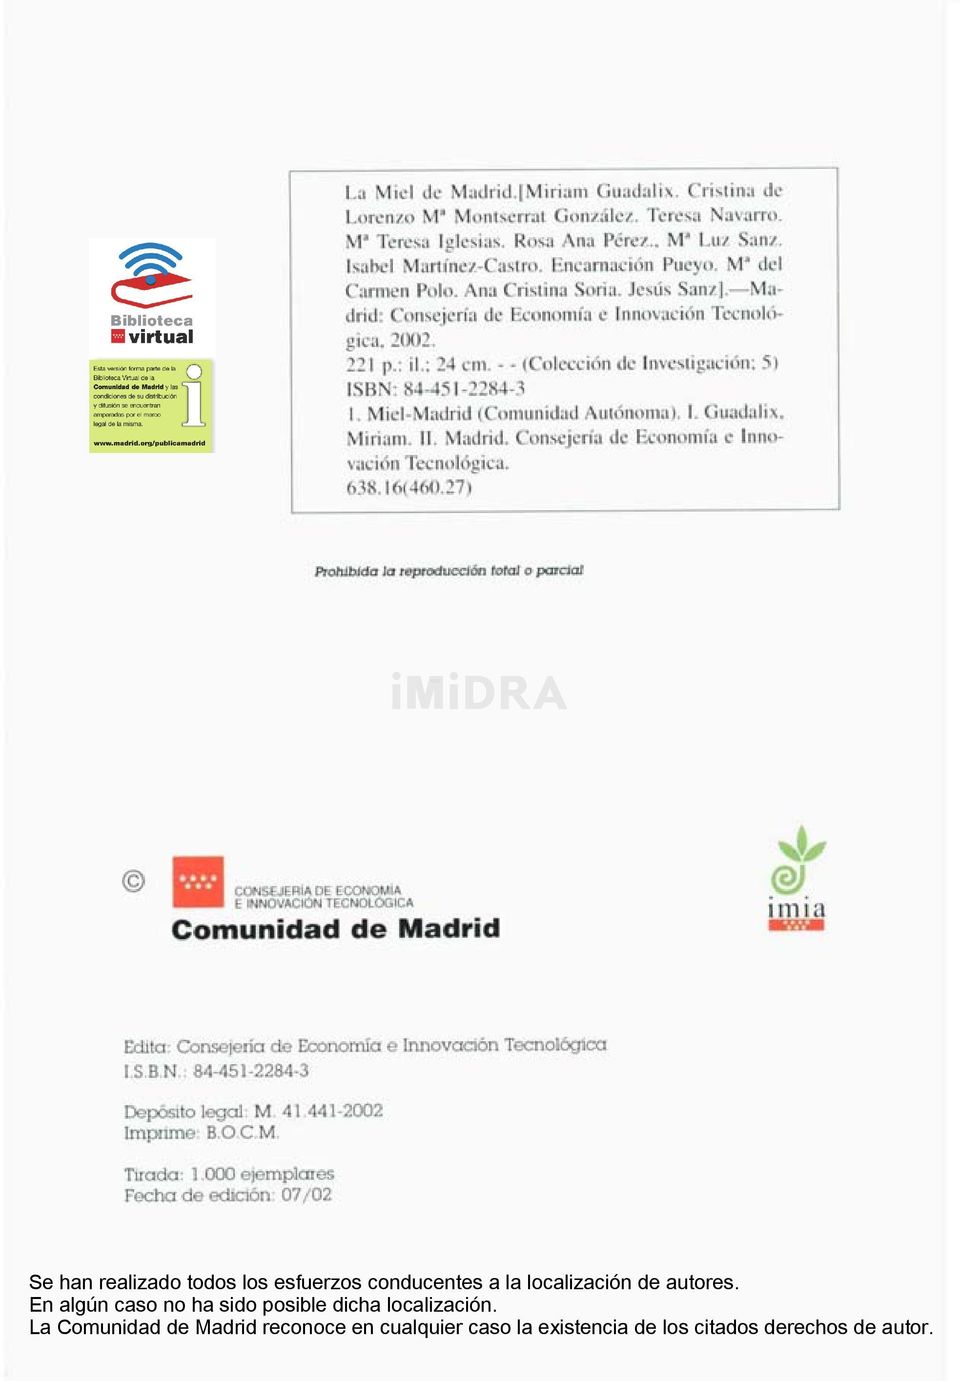 Miel-Madrid (Comunidad Autónoma). I. Guadalix, Miriam. II. Madrid. Consejería de Economía e Innovación Tecnológica. 638.16(460.